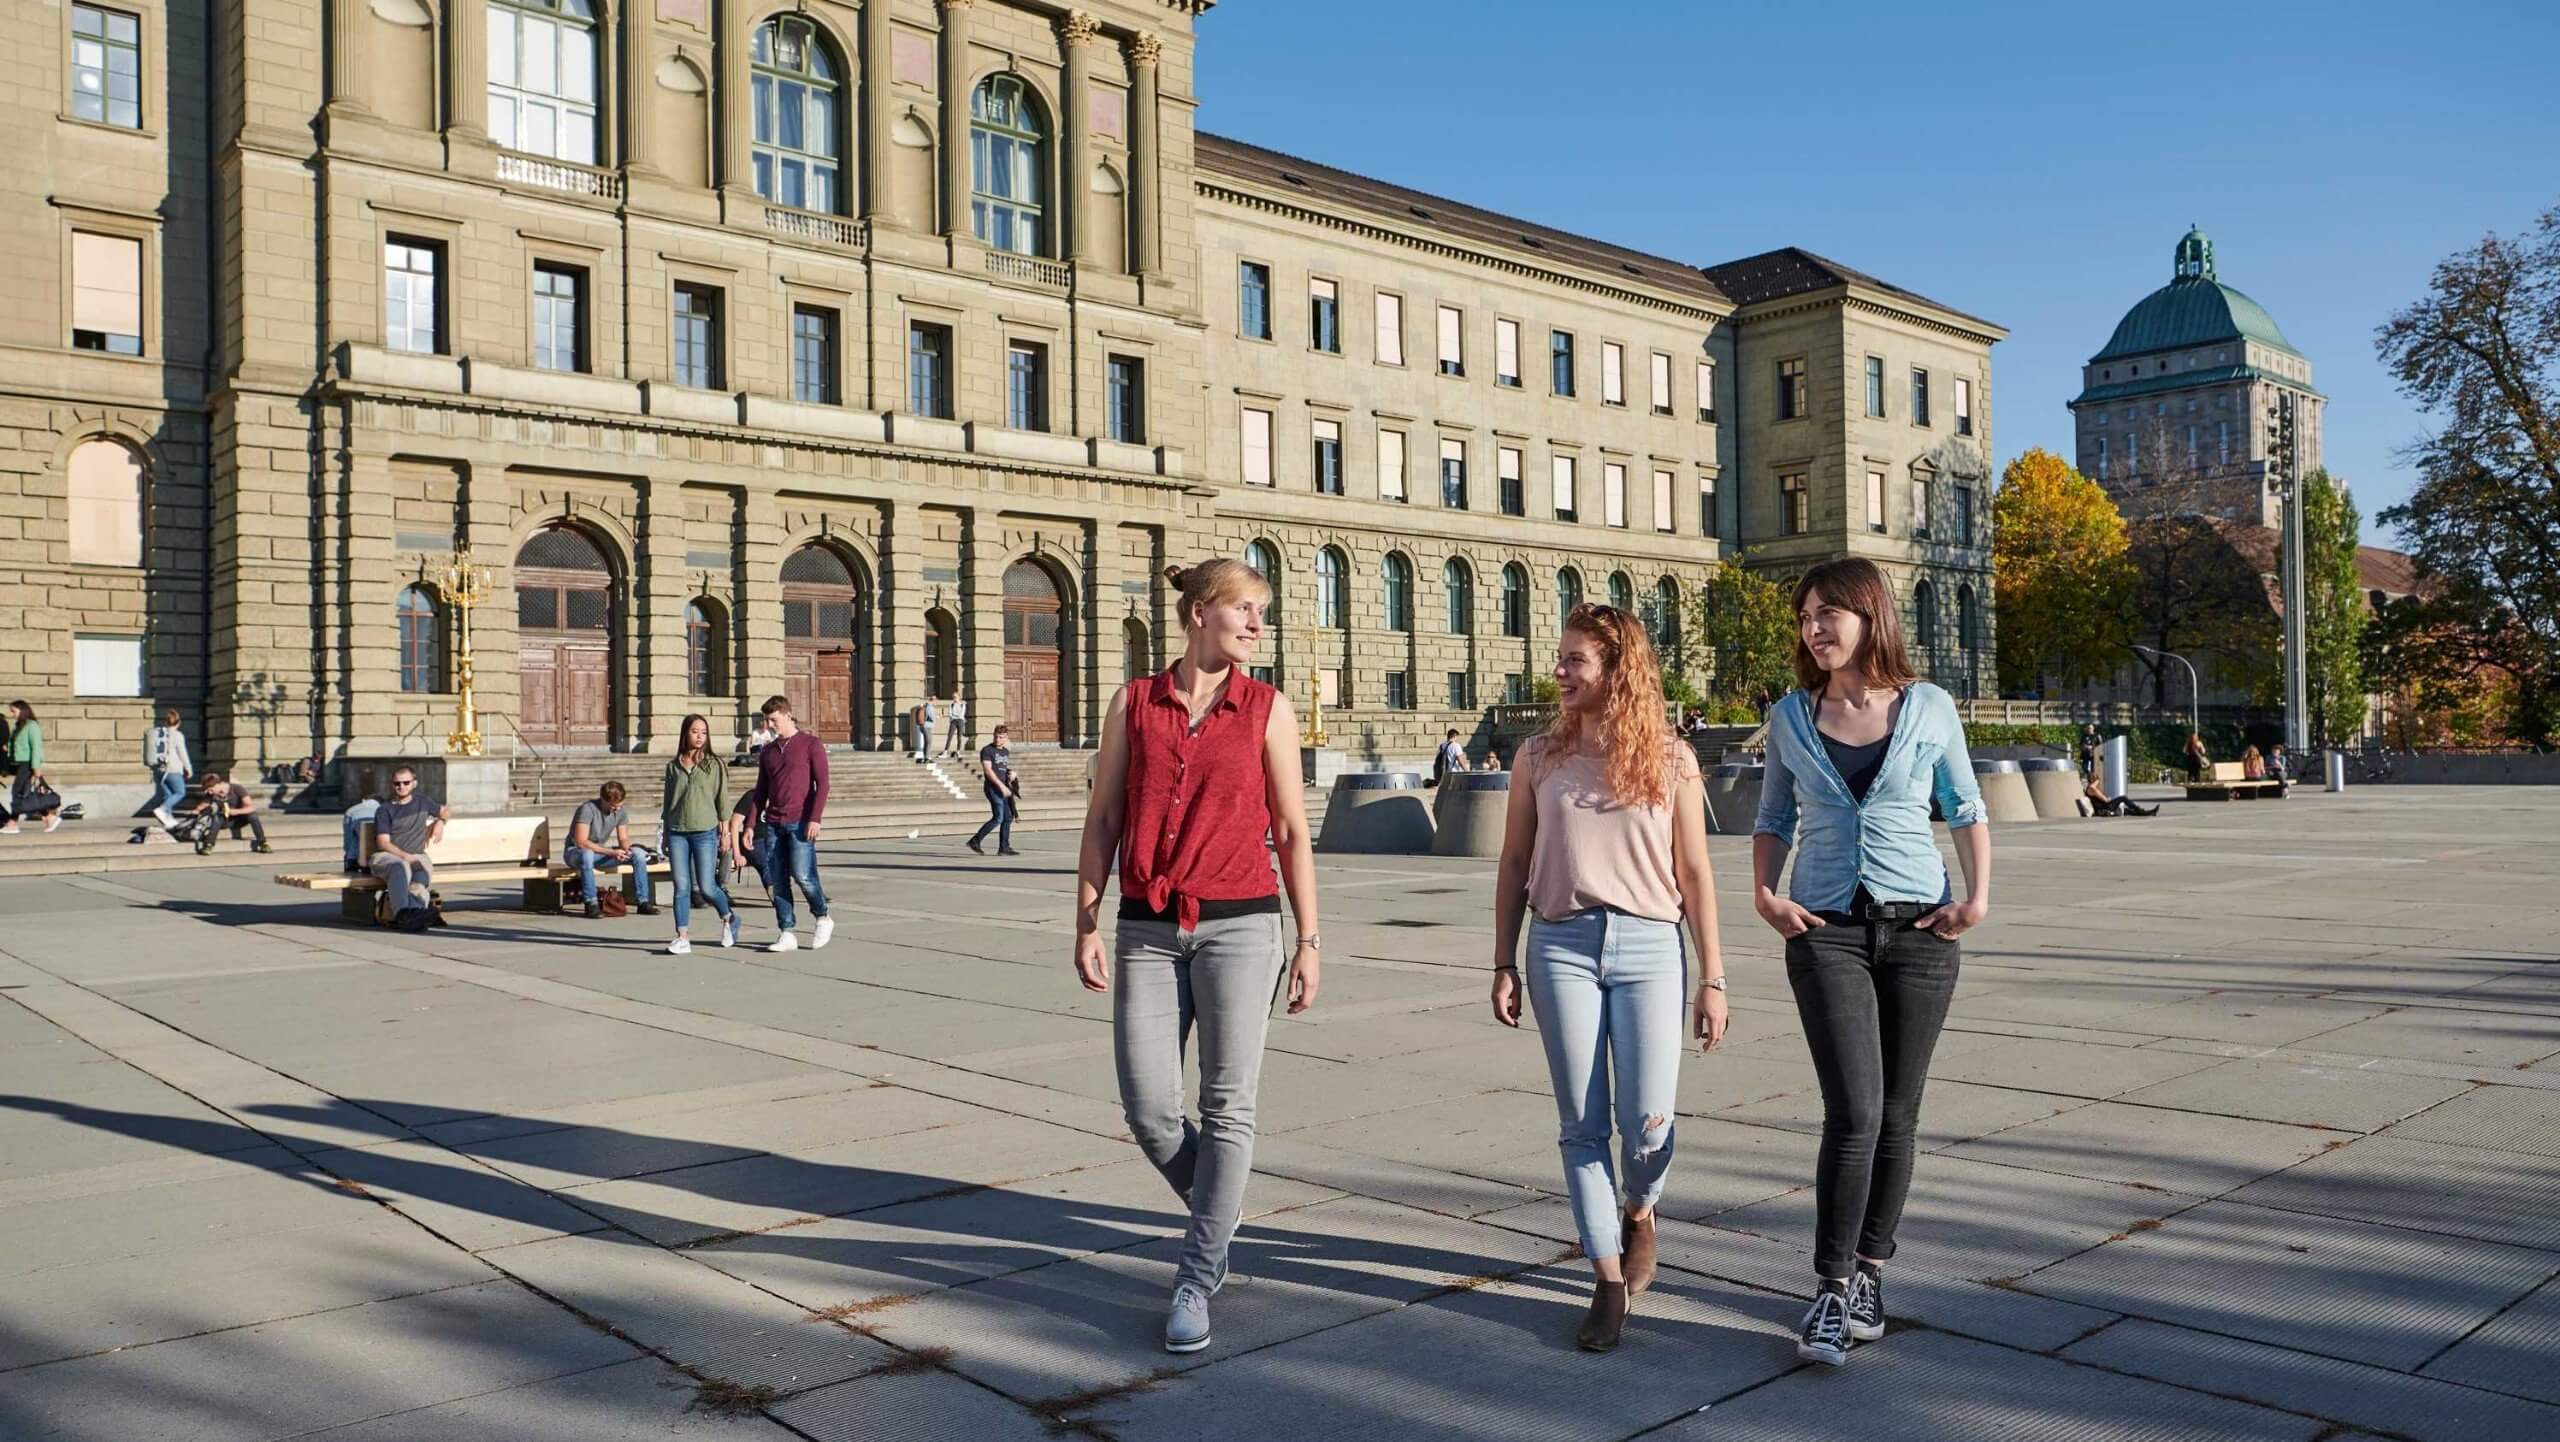 Đại học ETH Zurich tạo dựng môi trường học tích cực và năng động cho sinh viên